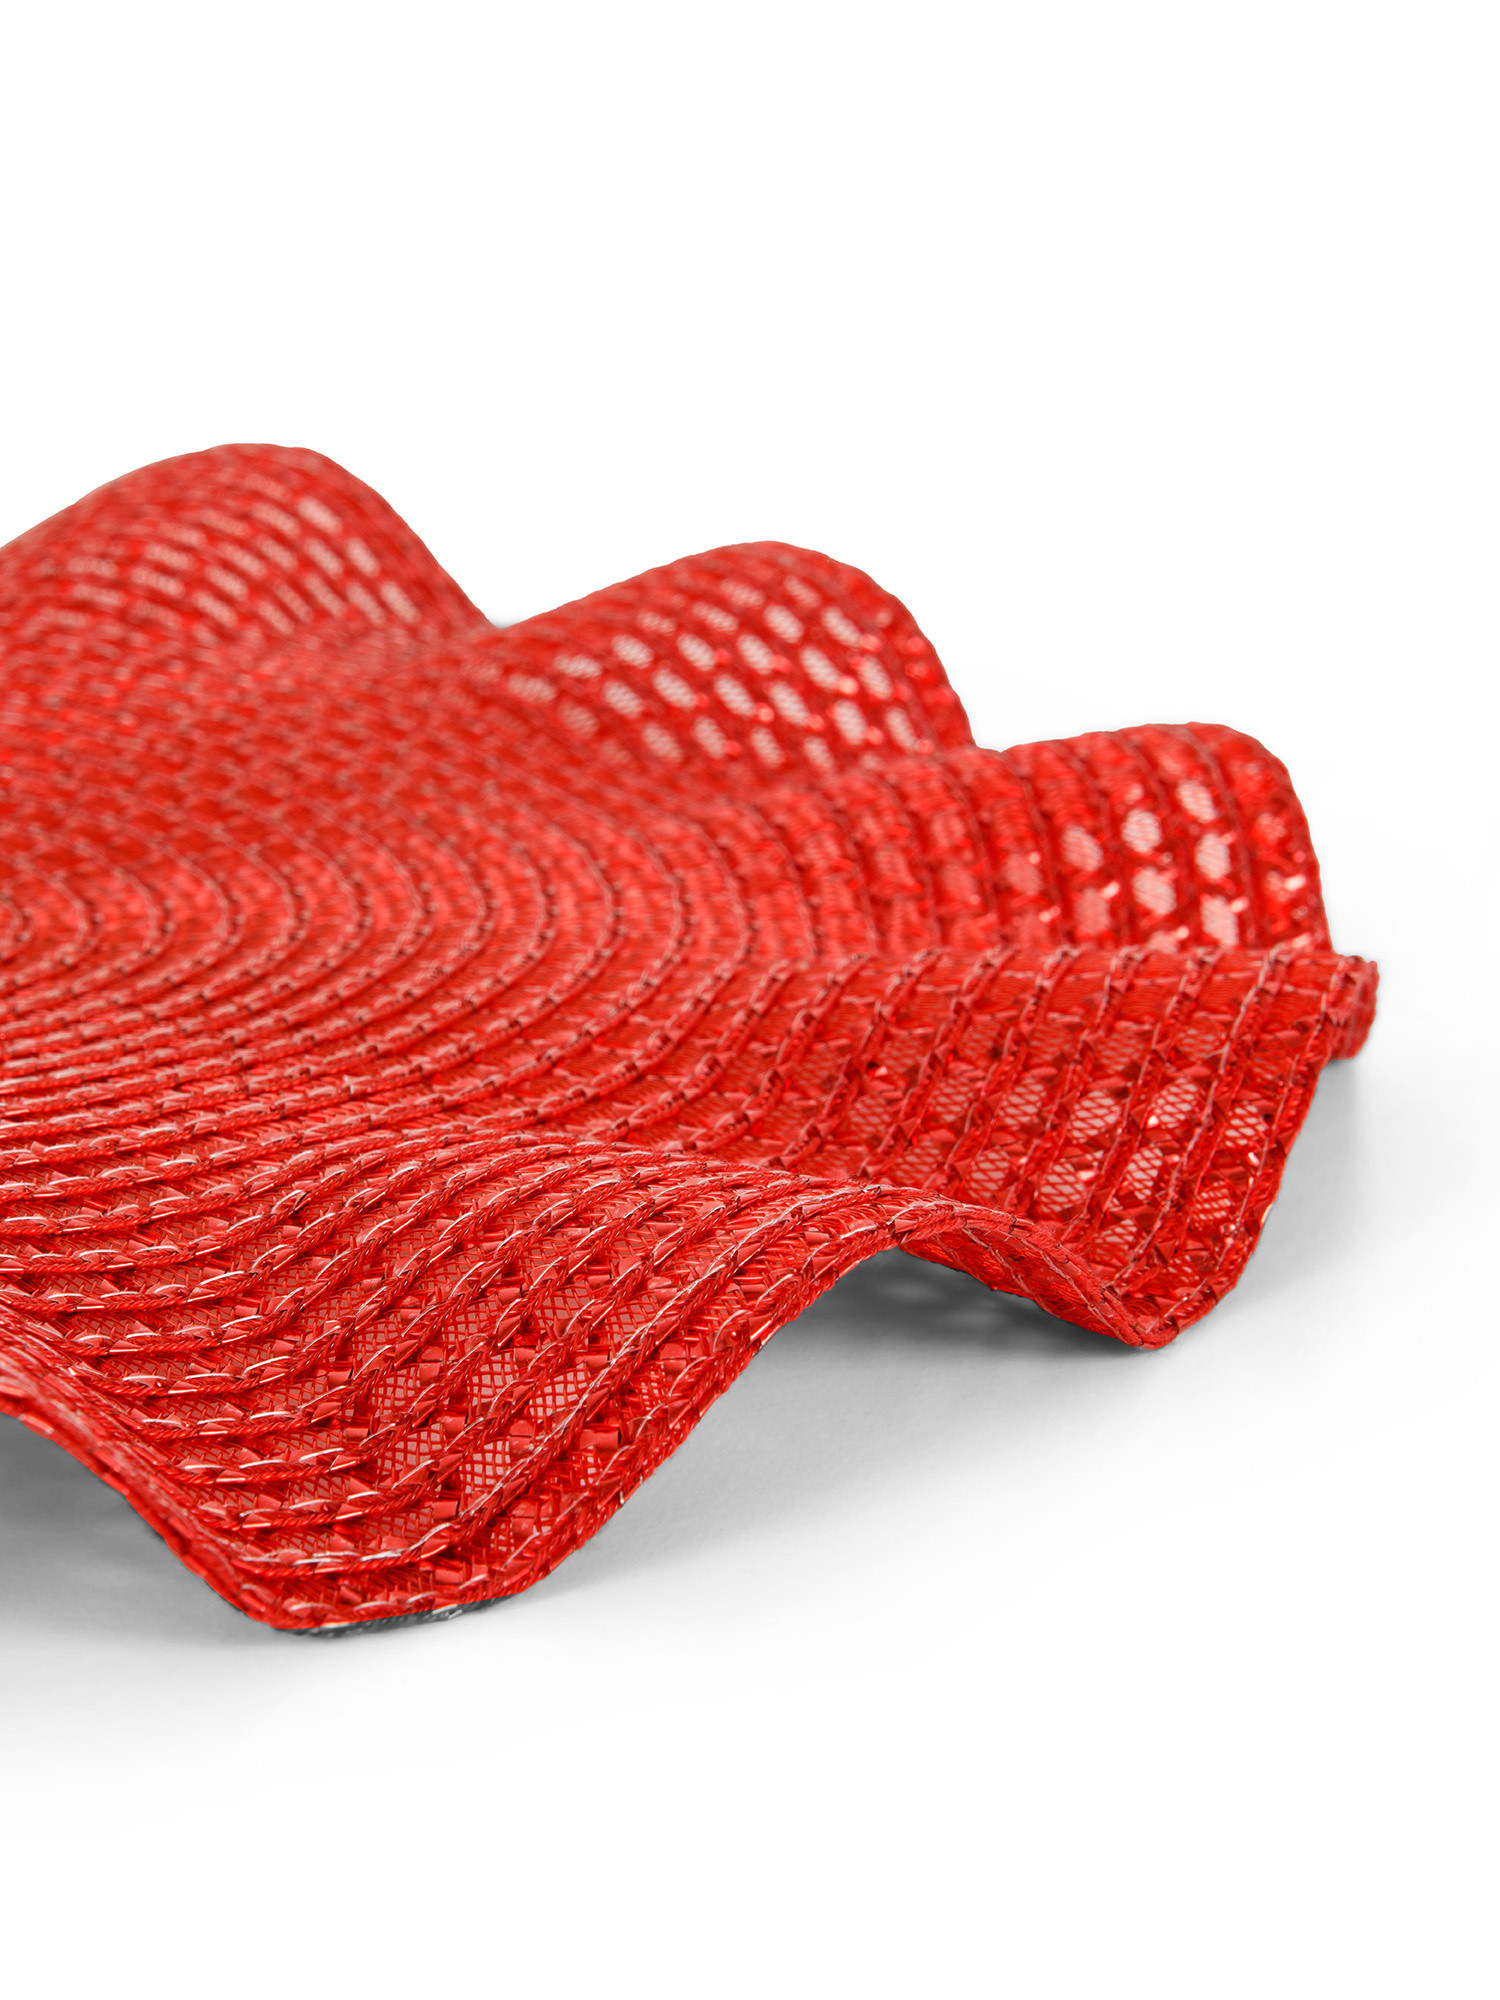 Tovaglietta in plastica effetto onde, Rosso, large image number 1